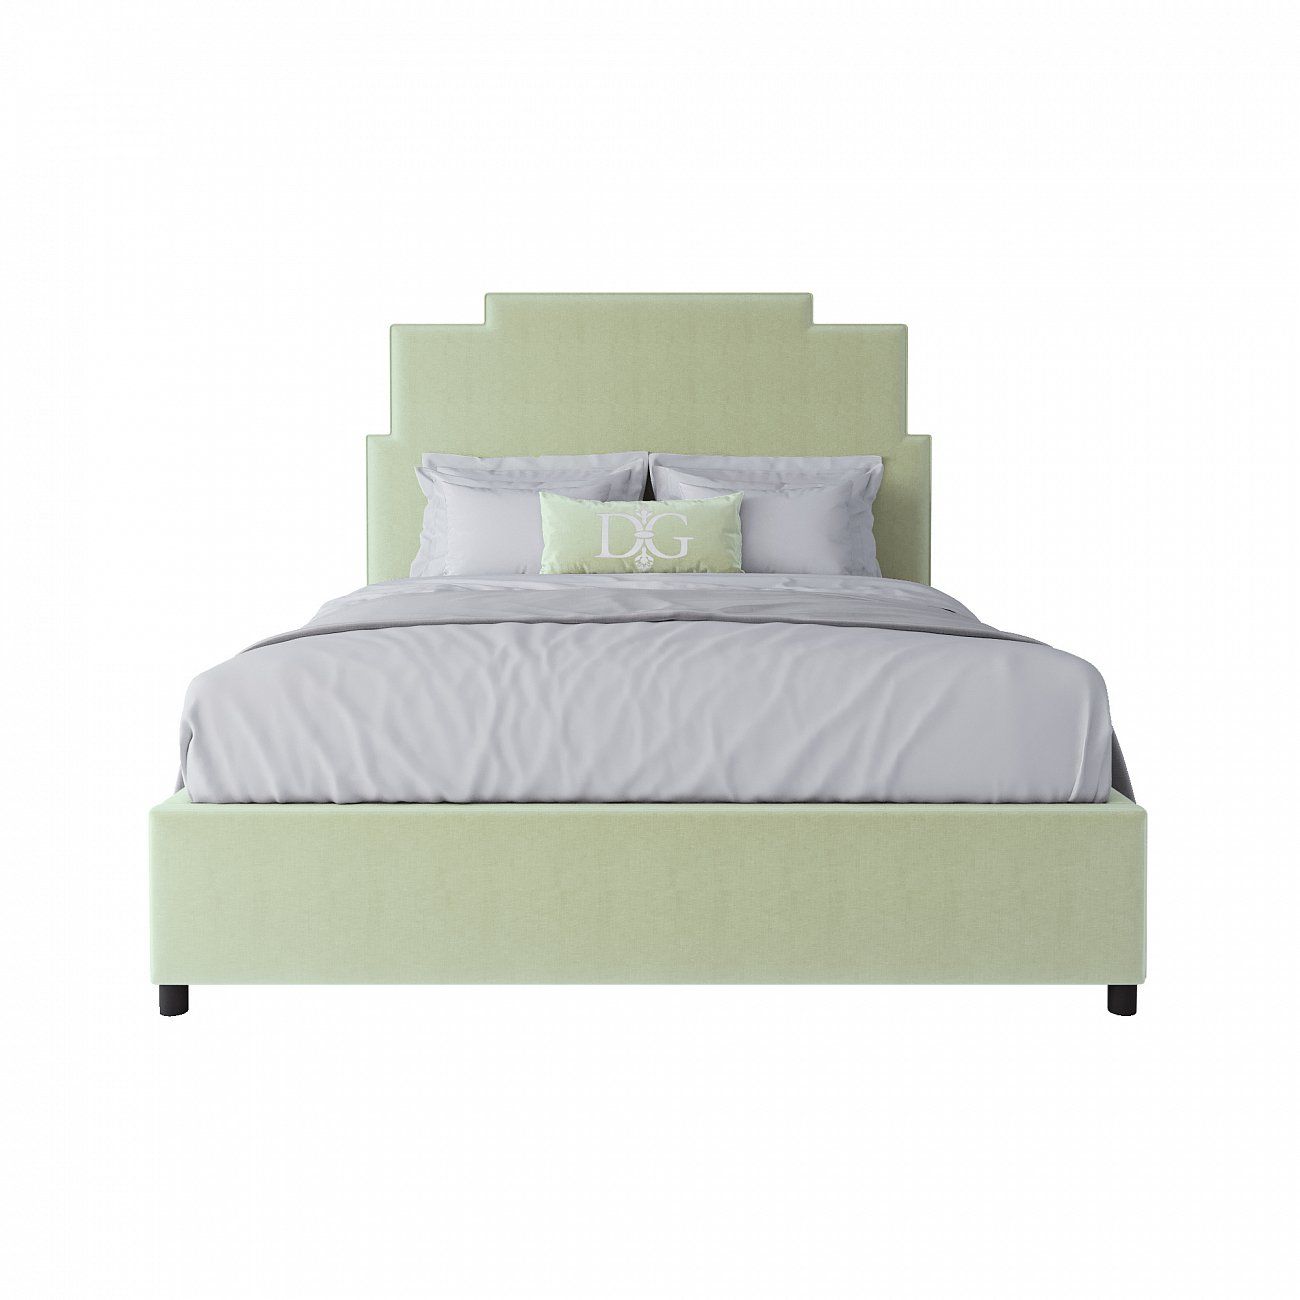 Кровать двуспальная 160x200 зеленая Paxton Bed Mint